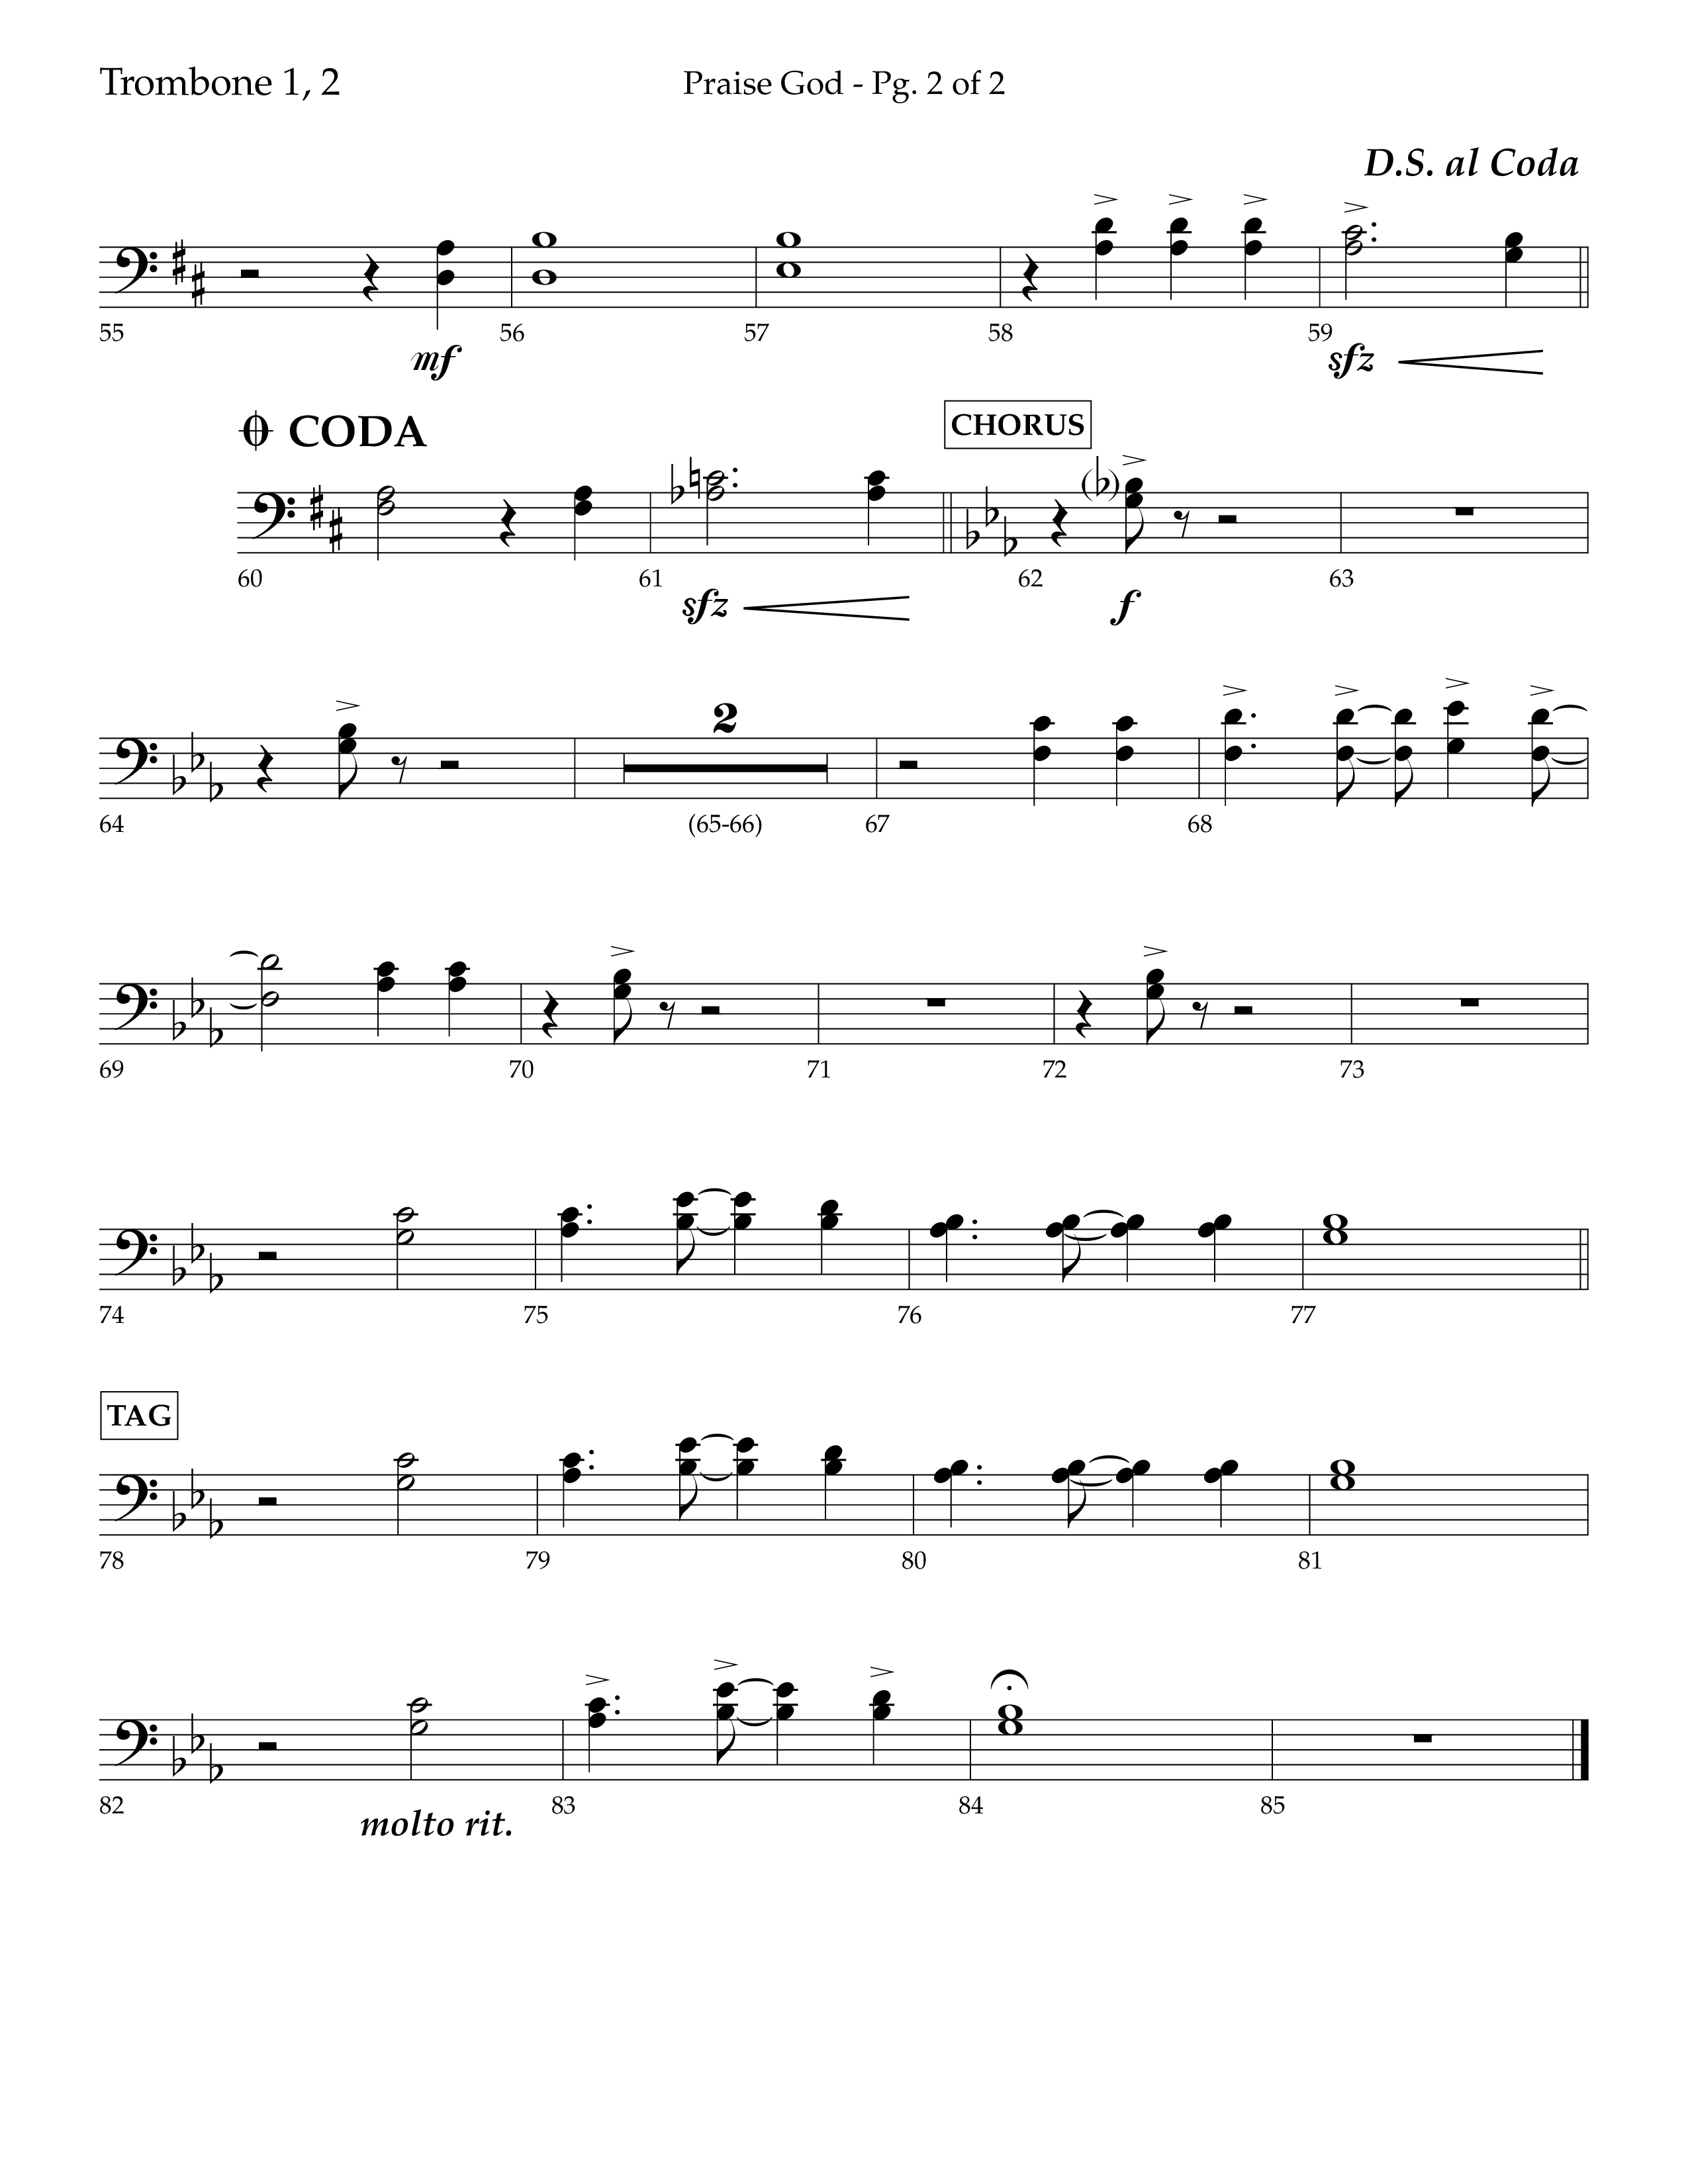 Praise God (Choral Anthem SATB) Trombone 1/2 (Lifeway Choral / Arr. Dennis Allen)